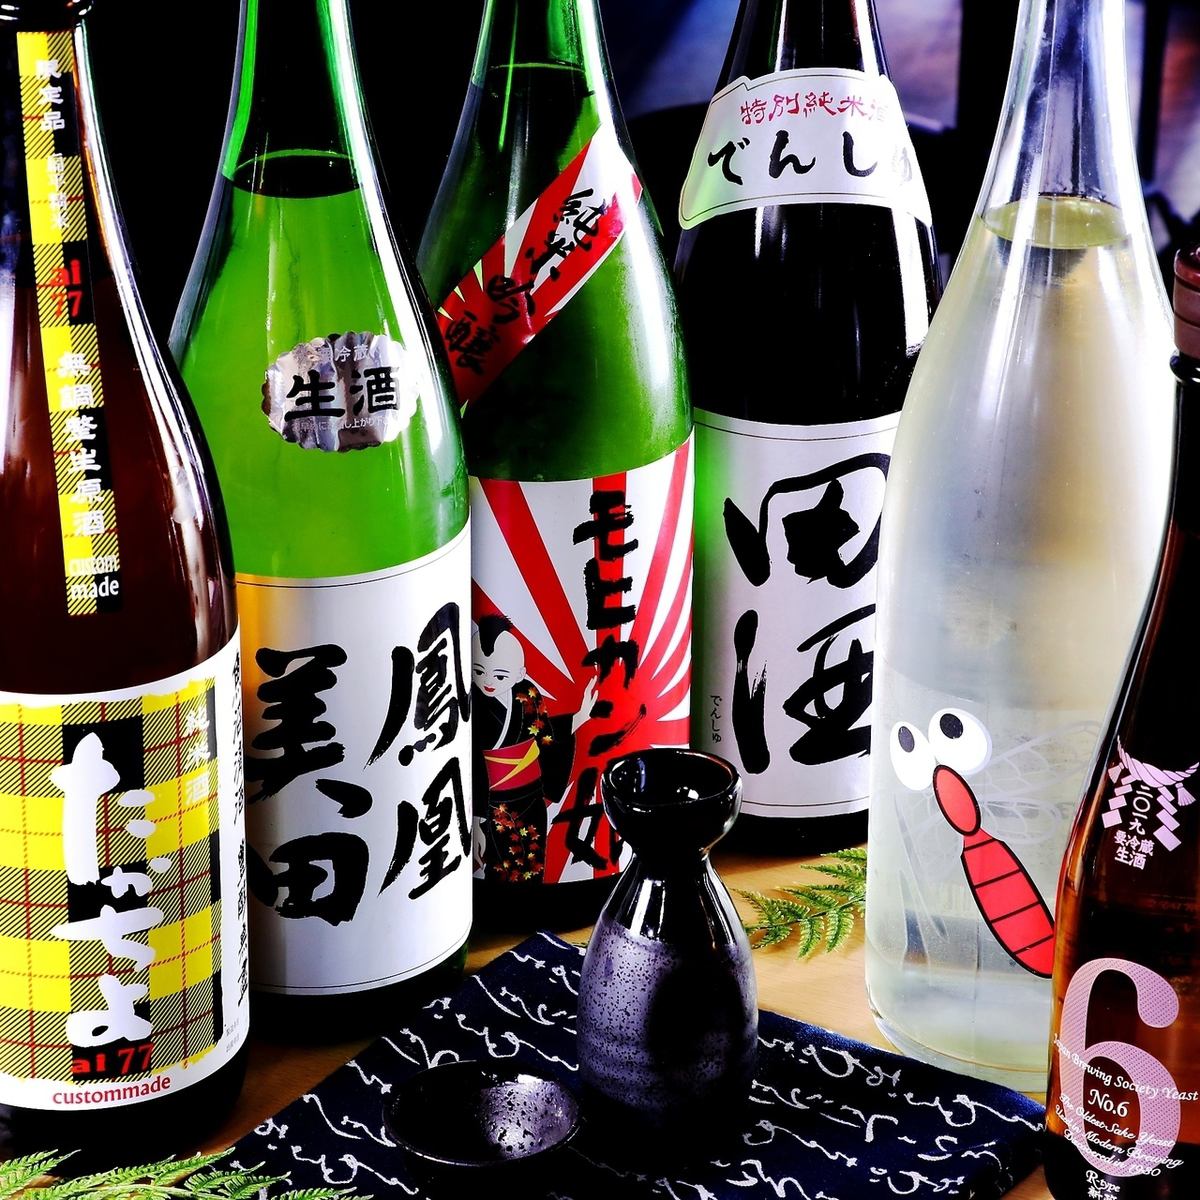 还有电酒、有马No6等人气品牌，也请品尝日本酒！